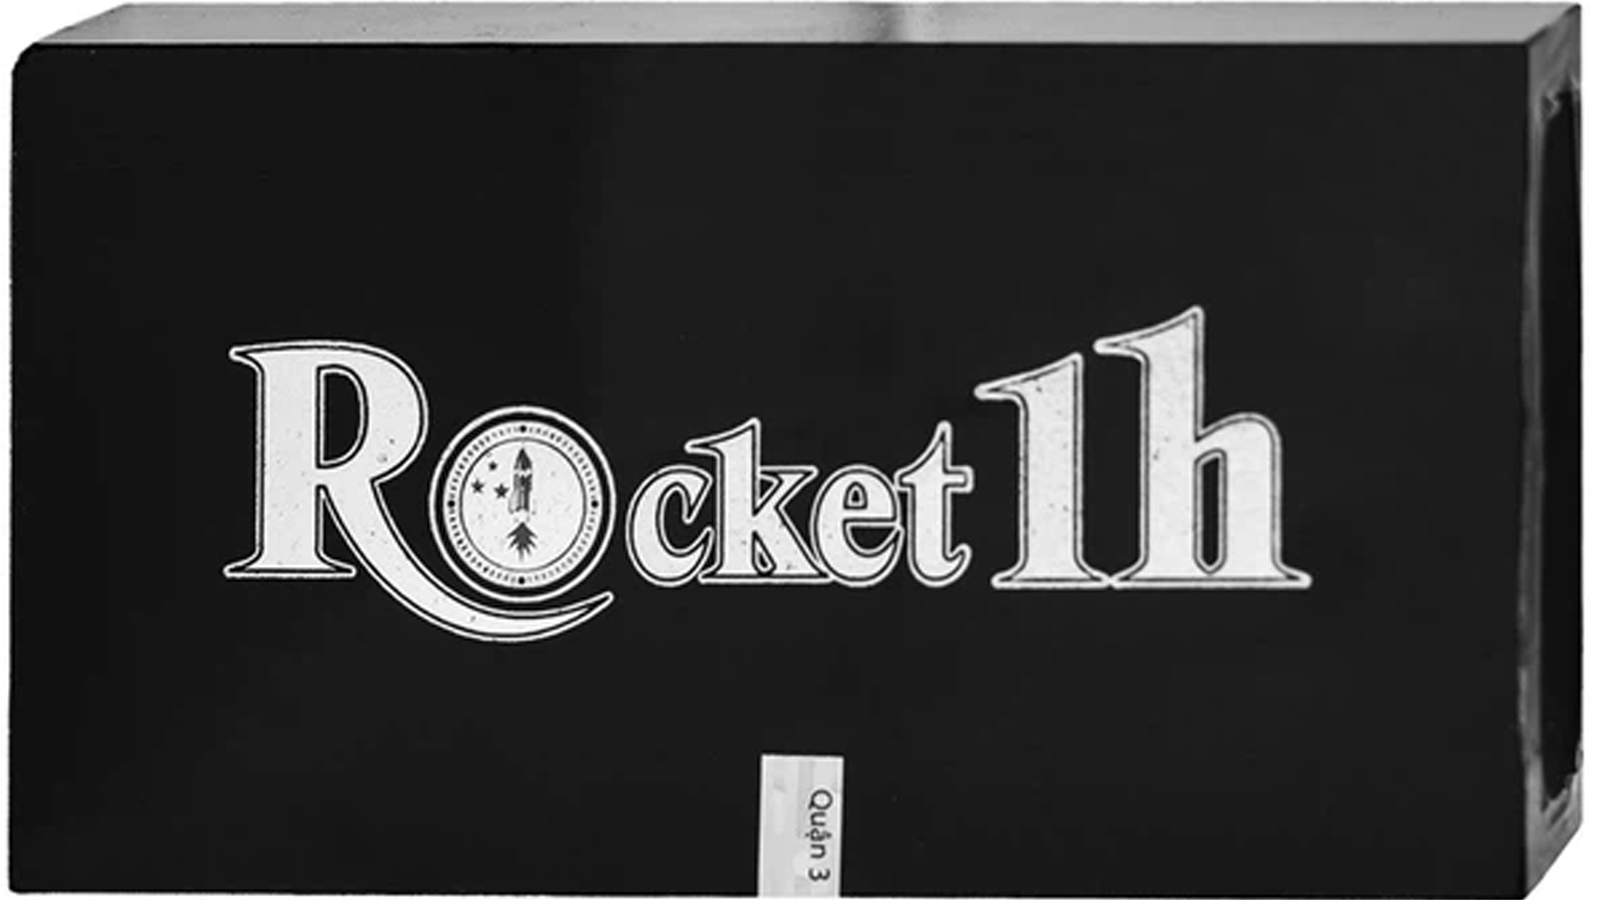 Sử dụng Rocket 1h có gây tác dụng phụ đến người sử dụng không?
